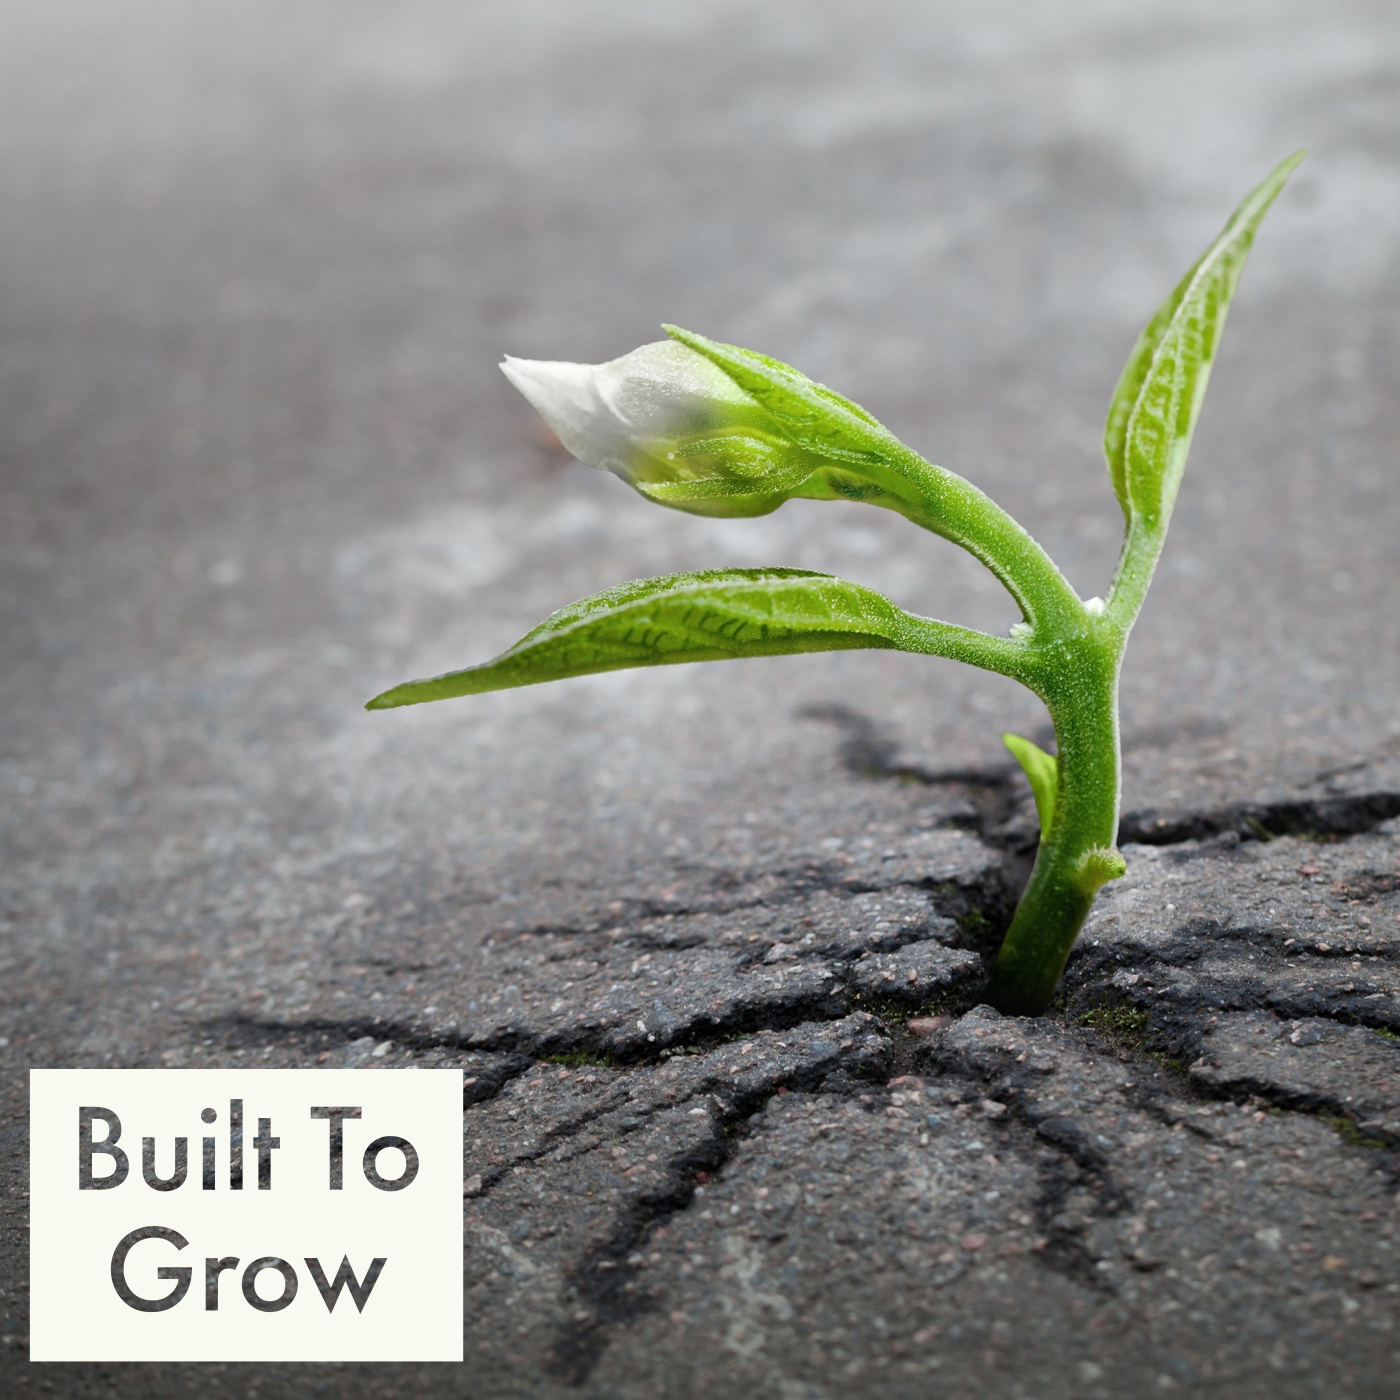 Built To Grow